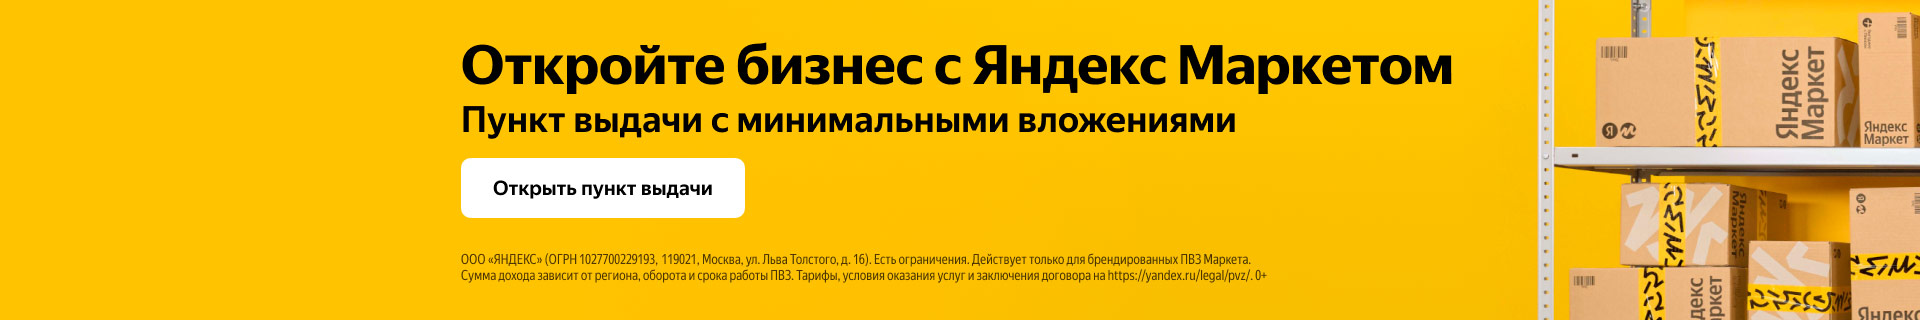 Франшиза брендированных пунктов выдачи заказов «Яндекс.Маркет»